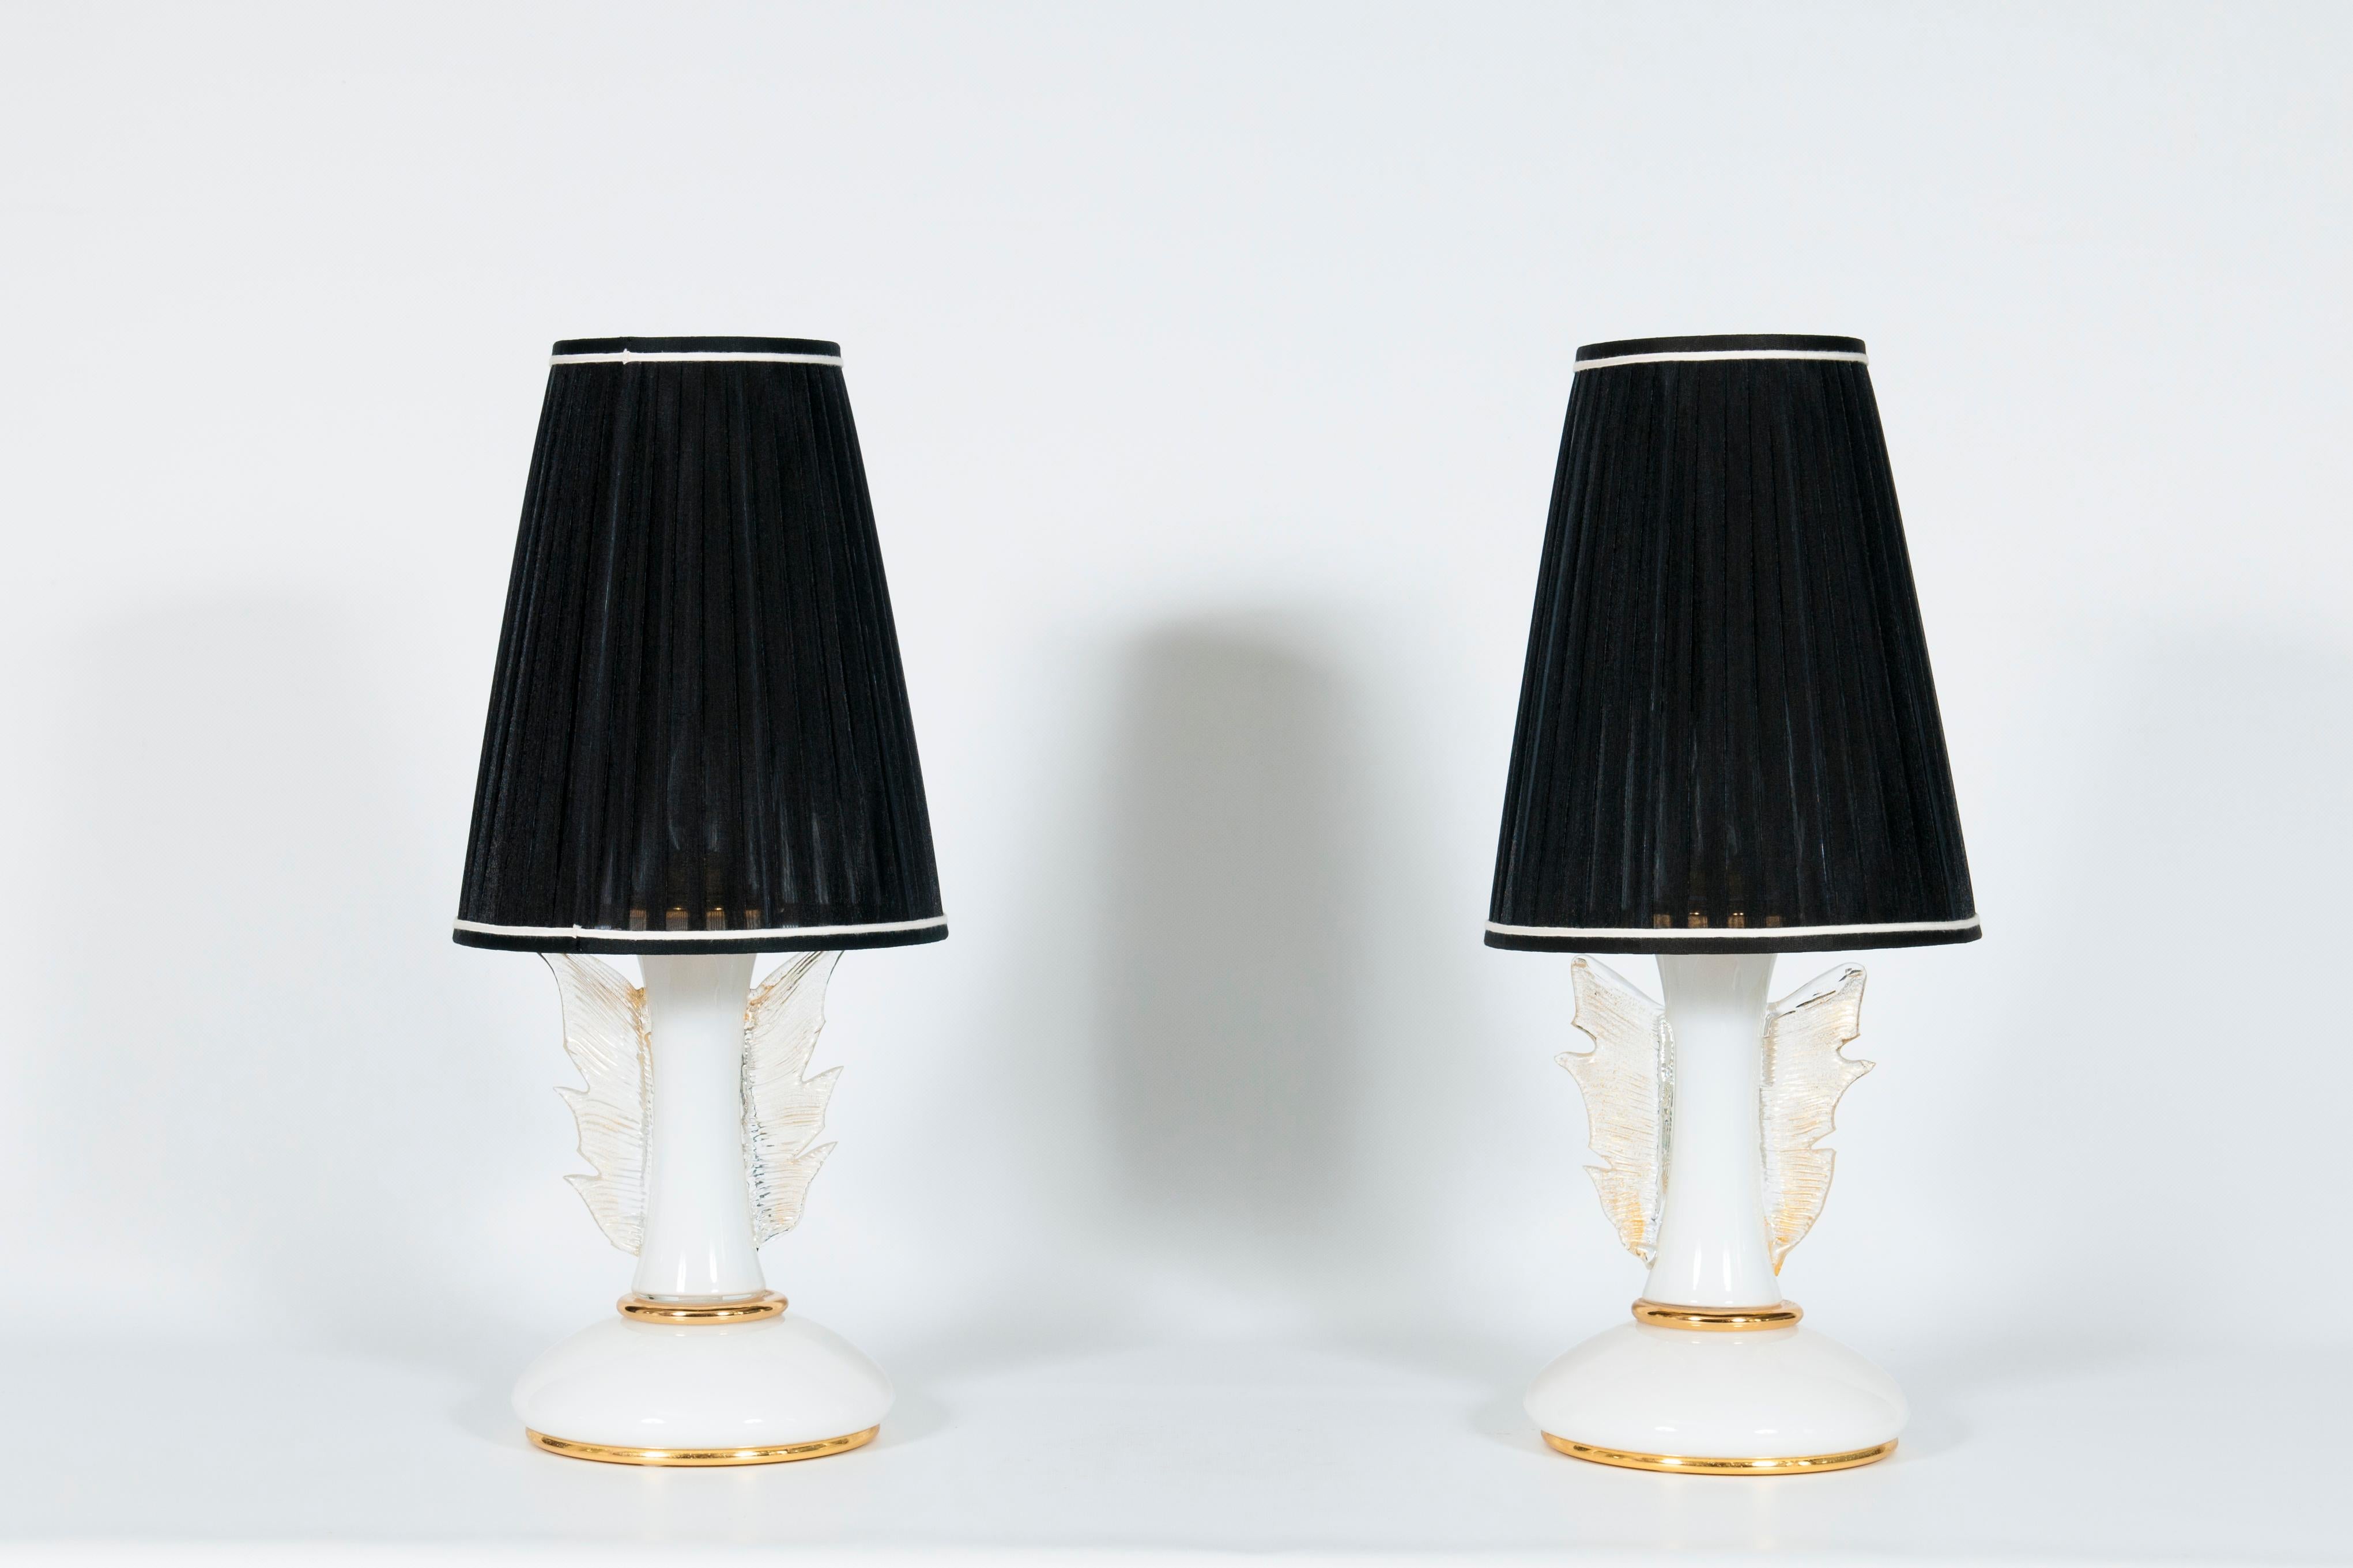 Elegant lampes de table en verre soufflé de Murano, 1970 Italie .
Ces chefs-d'œuvre sont composés d'un cadre en or avec un noyau métallique interne reliant les parties en verre. Chaque lampe est dotée d'une paire d'ailes en or sur les côtés ; tous